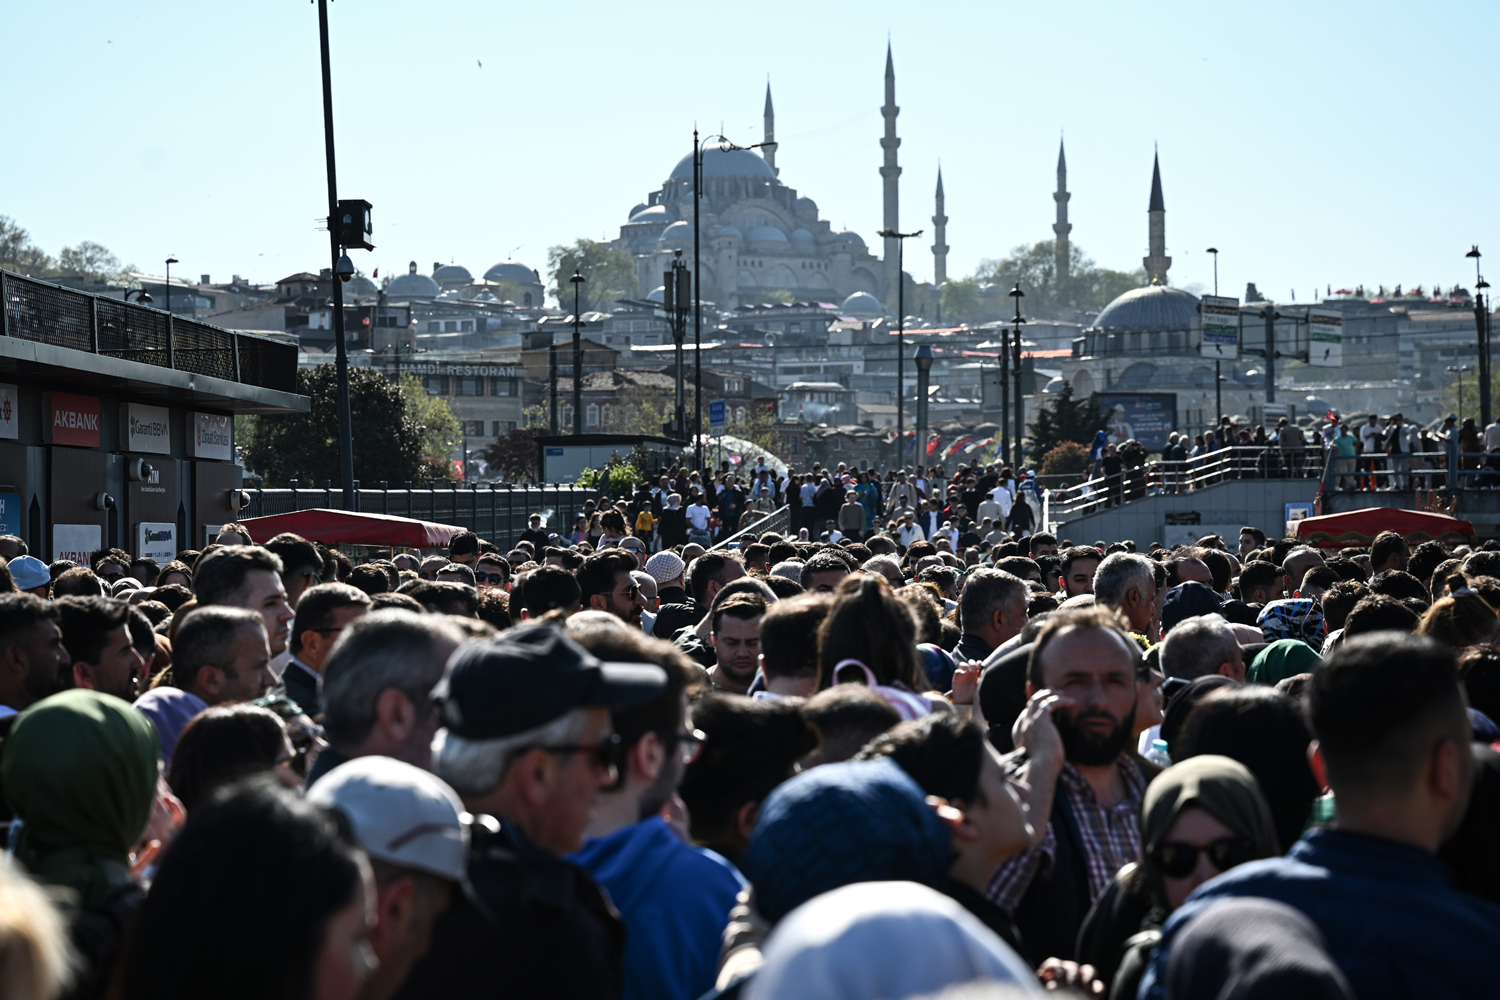 İstanbul'un tarihi ve turistik yerlerinde bayram yoğunluğu yaşanıyor 